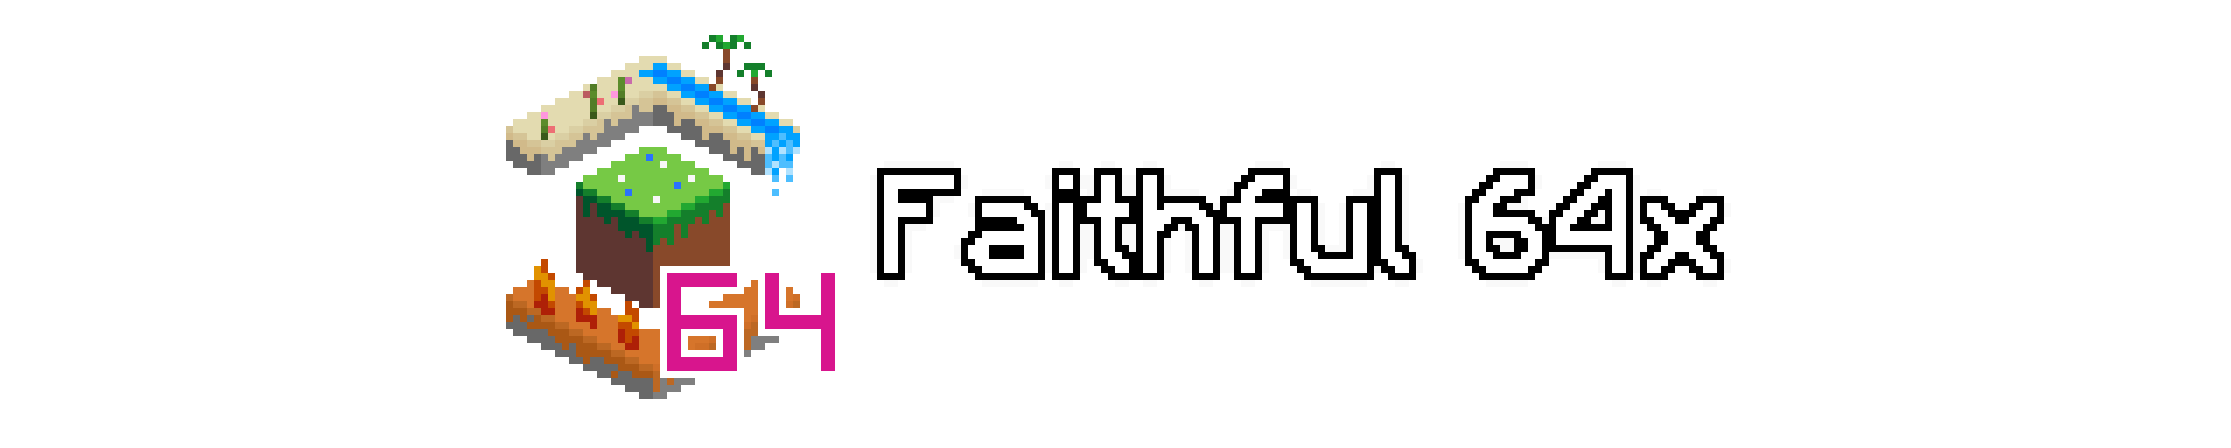 Faithful 64x Minecraft Texture Pack